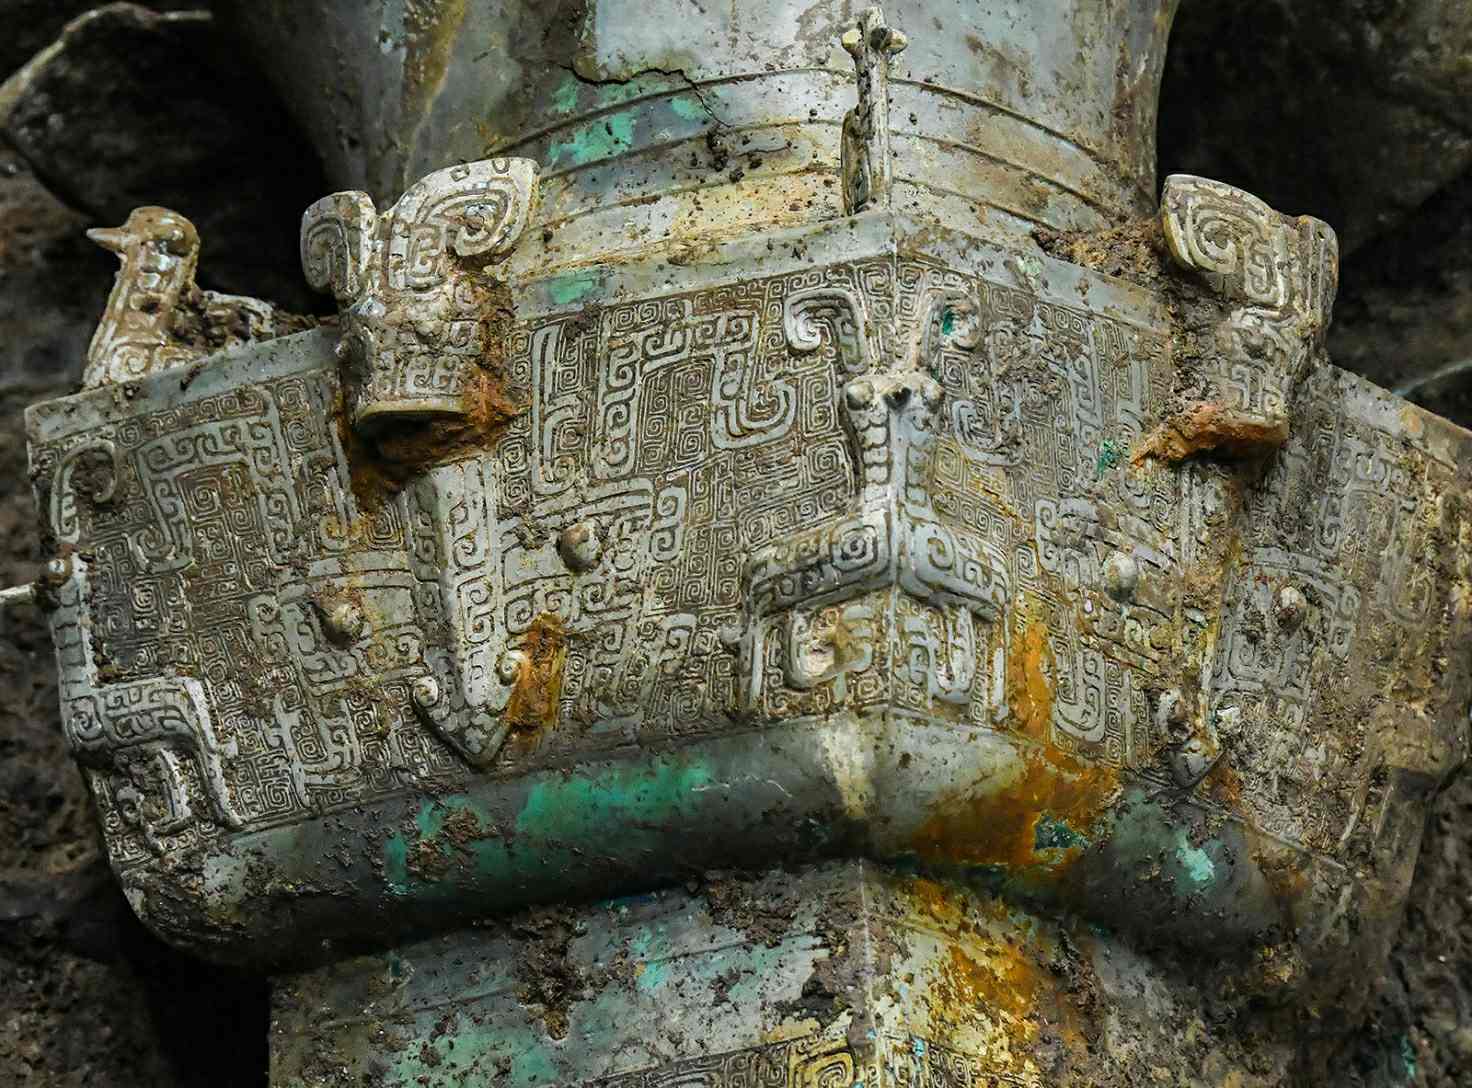 Di tích văn hóa được khai quật tại hố tế lễ số 3 thuộc khu Di tích Sanxingdui ở Đức Dương, tỉnh Tứ Xuyên, Trung Quốc, ngày 20 tháng 2021 năm XNUMX.